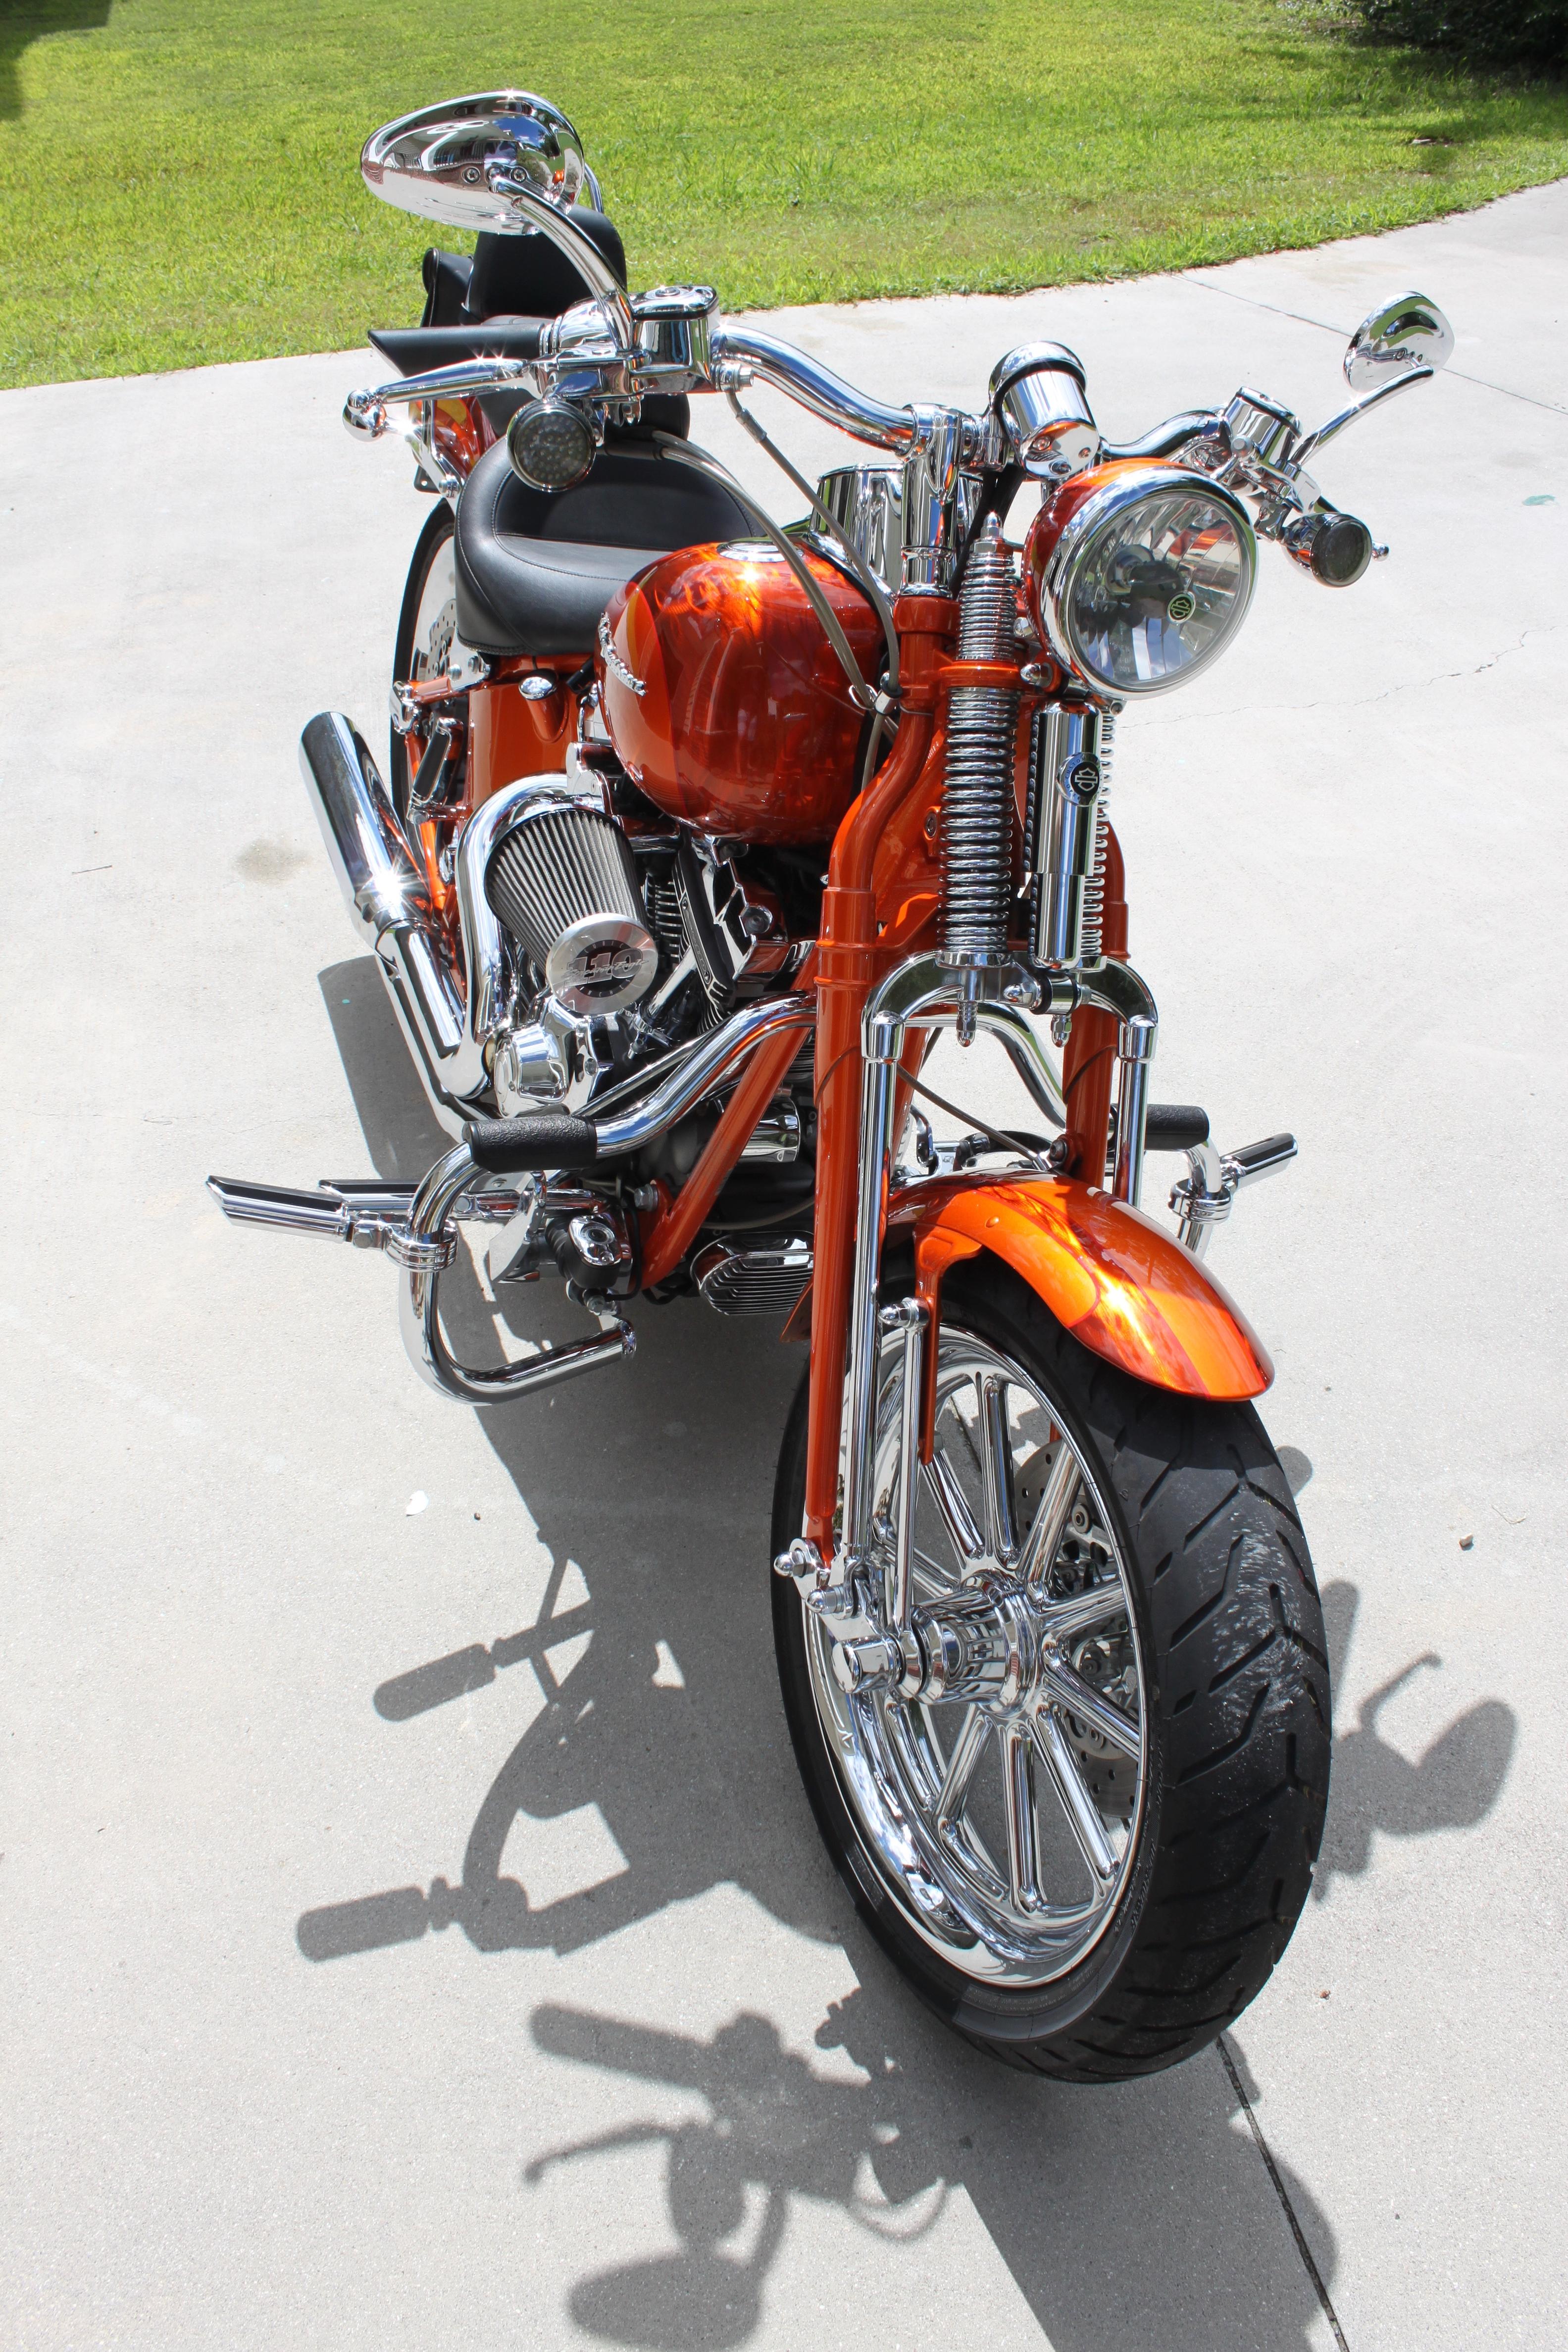 2008 Harley Davidson CVO Springer - Harley Davidson Forums